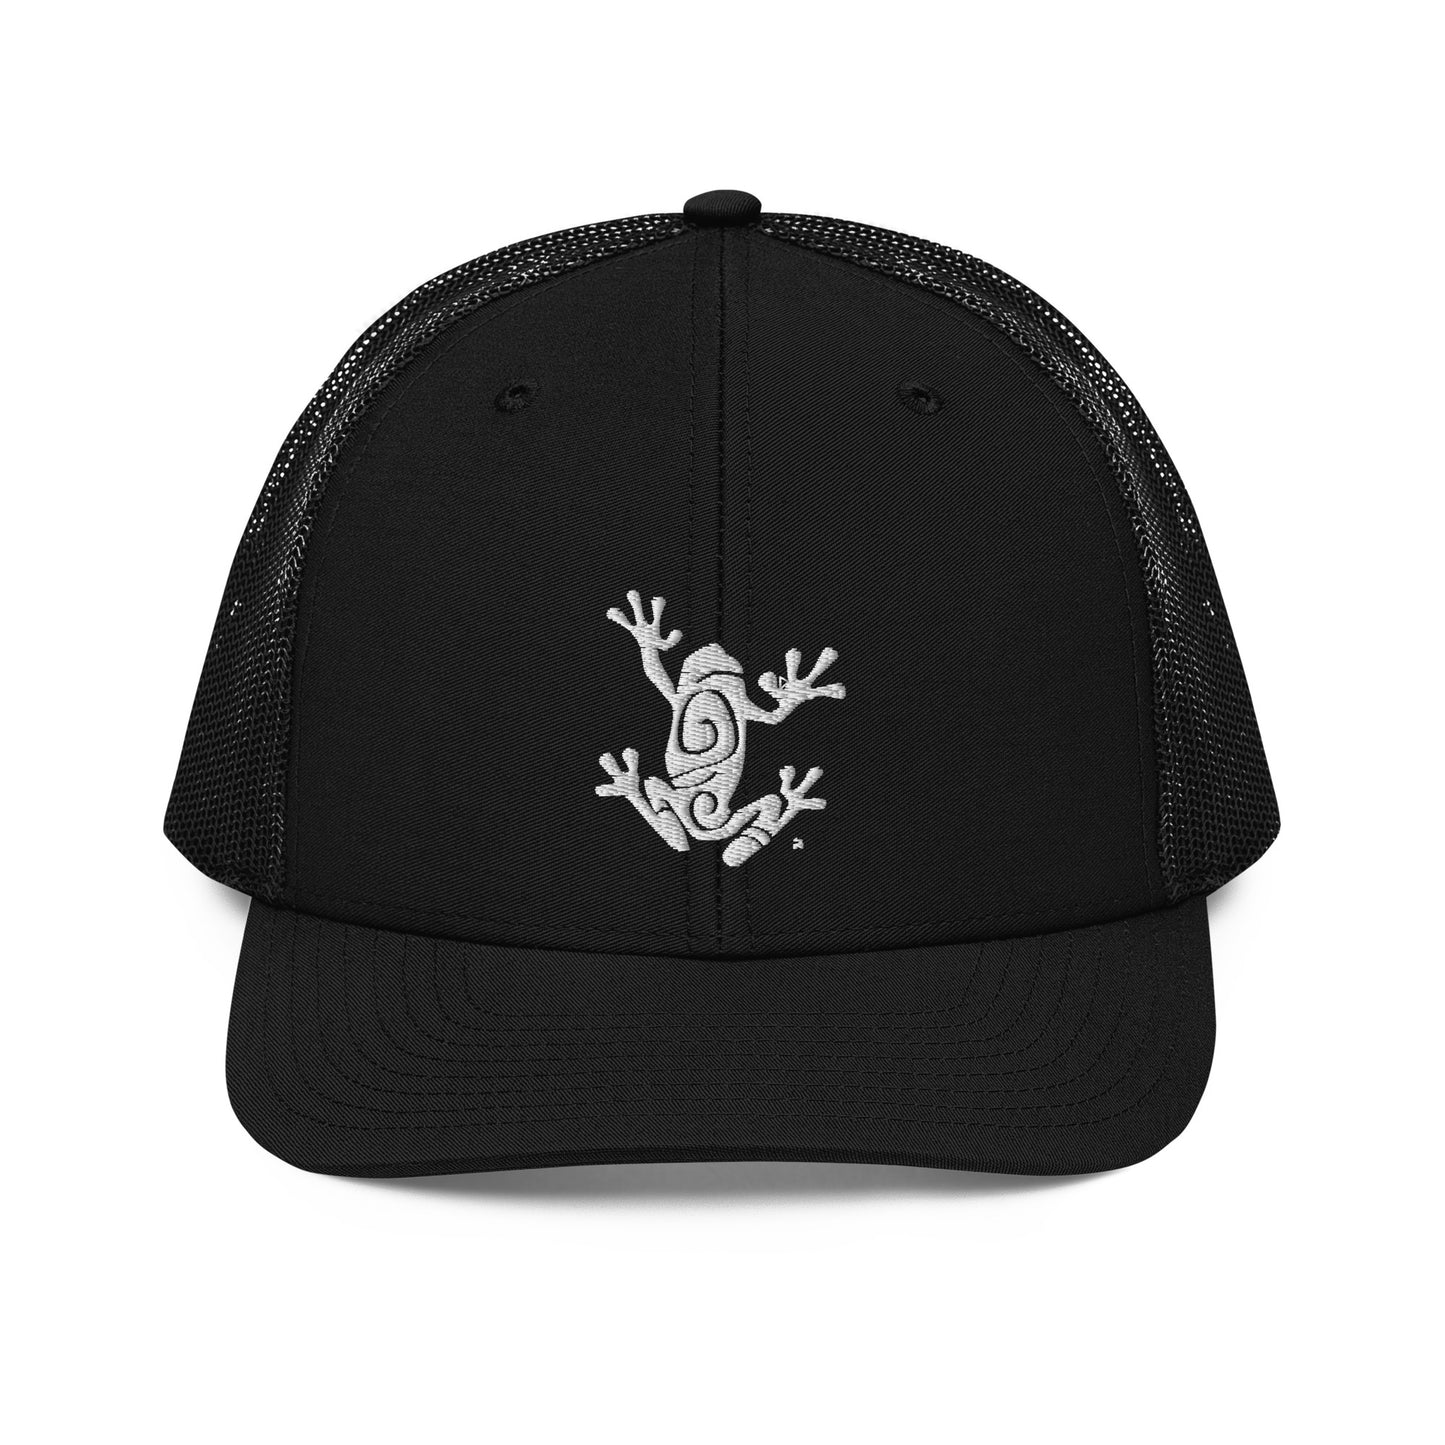 Frog & CO Trucker Hat